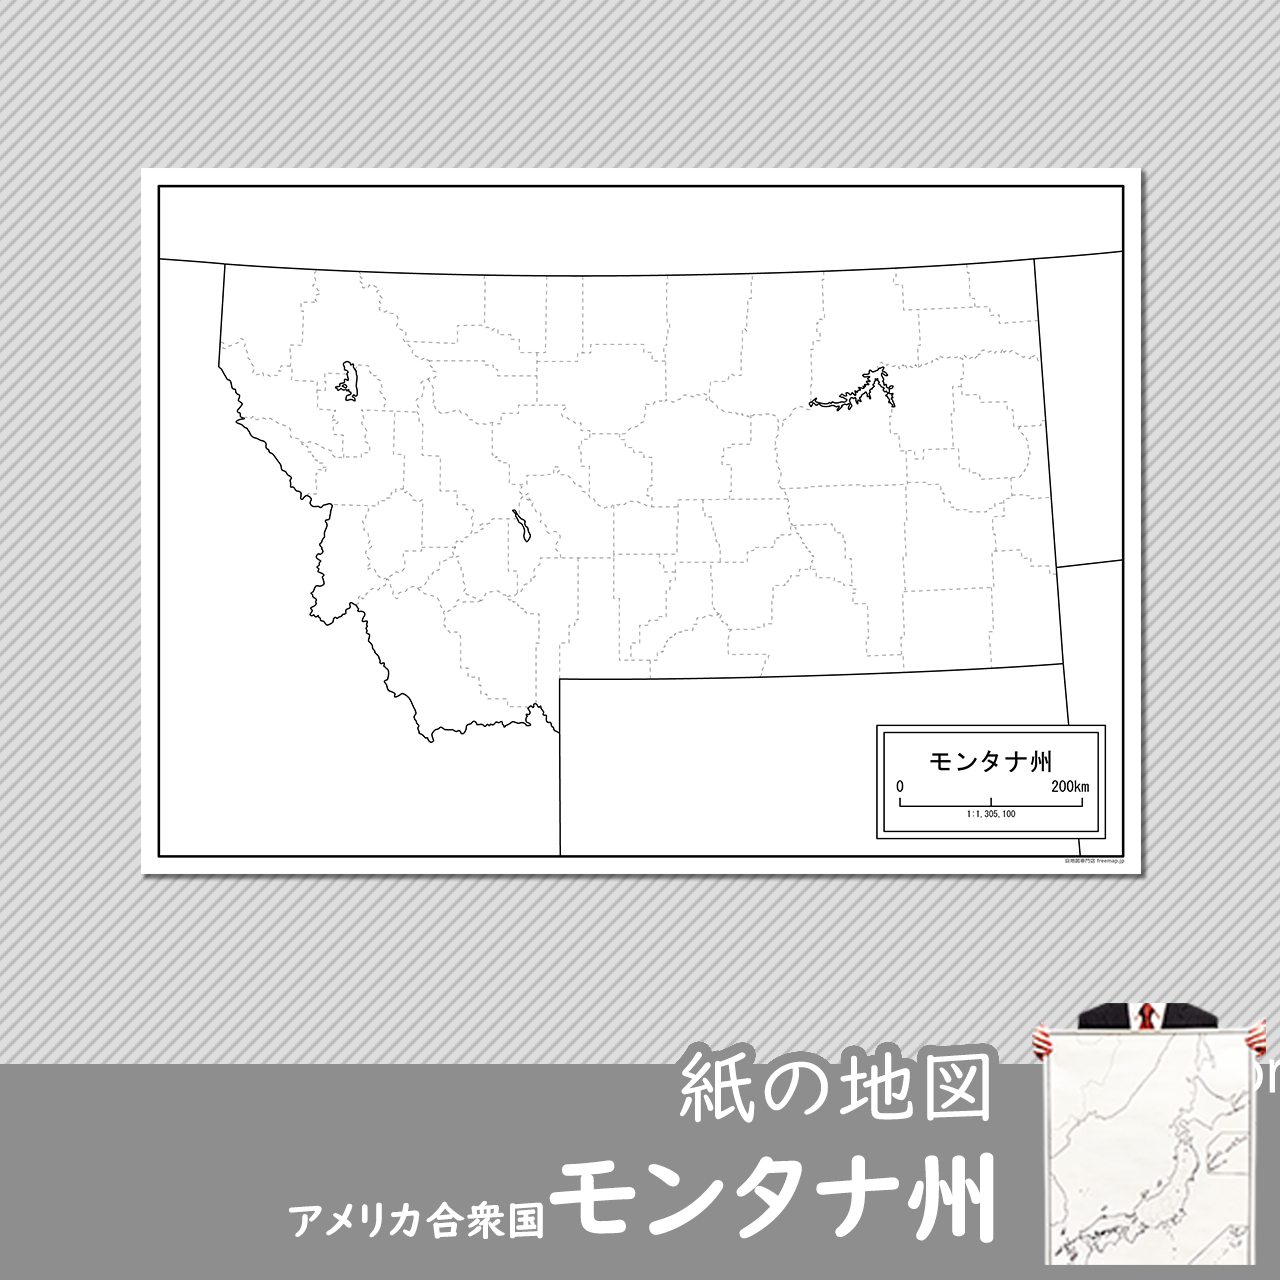 モンタナ州の紙の白地図のサムネイル